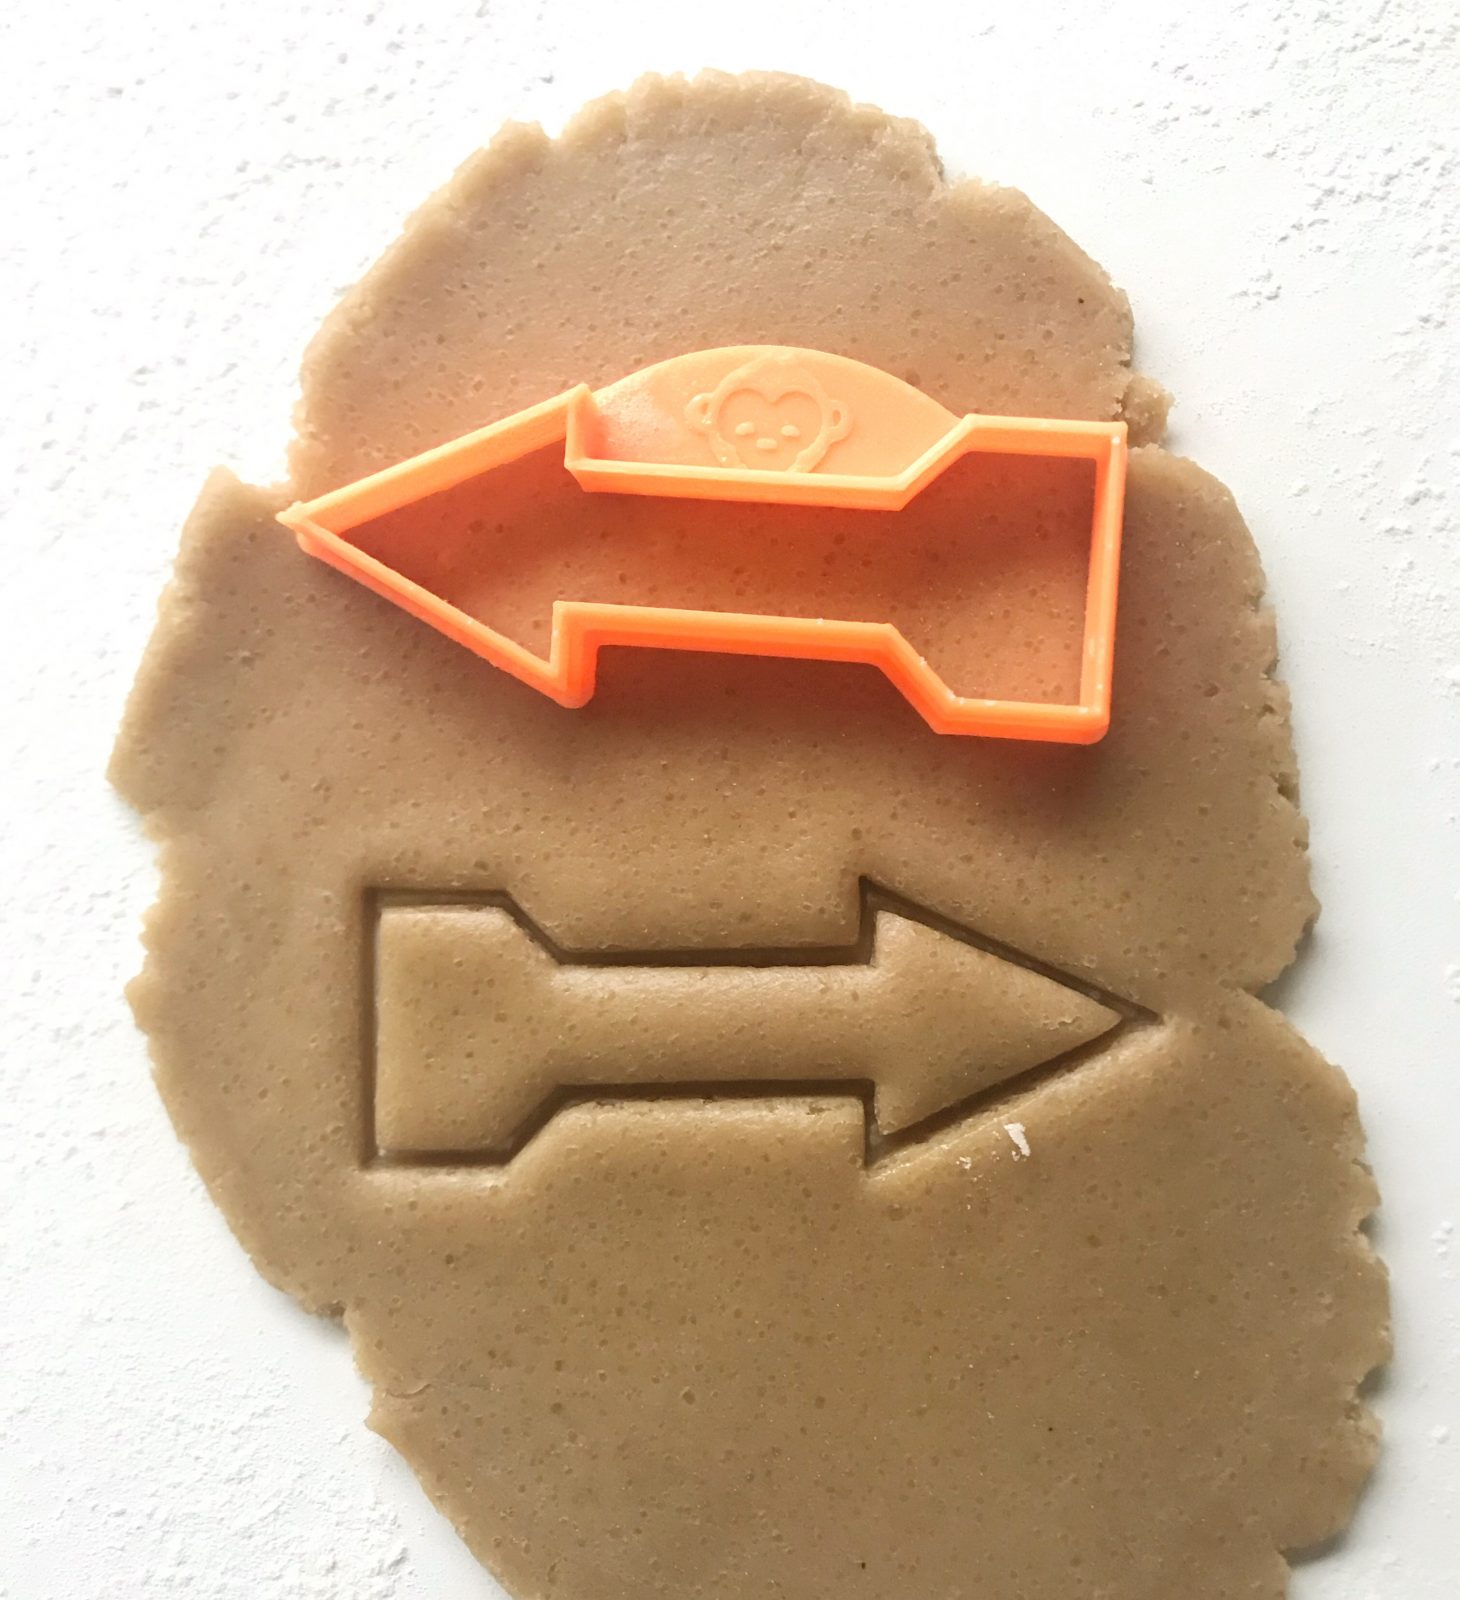 orange arrow cookie cutter on dough